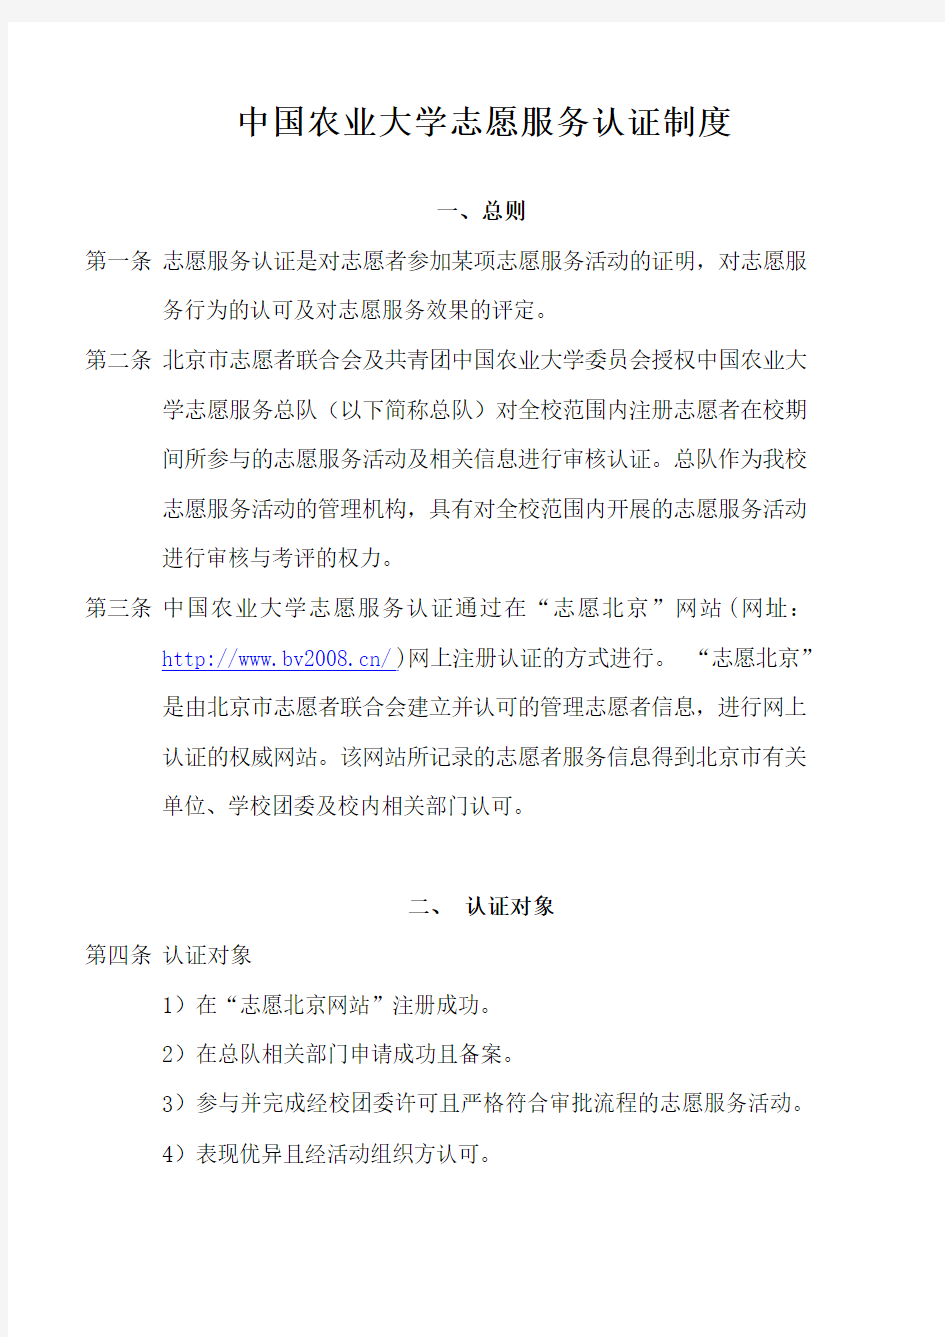 中国农业大学志愿服务认证制度